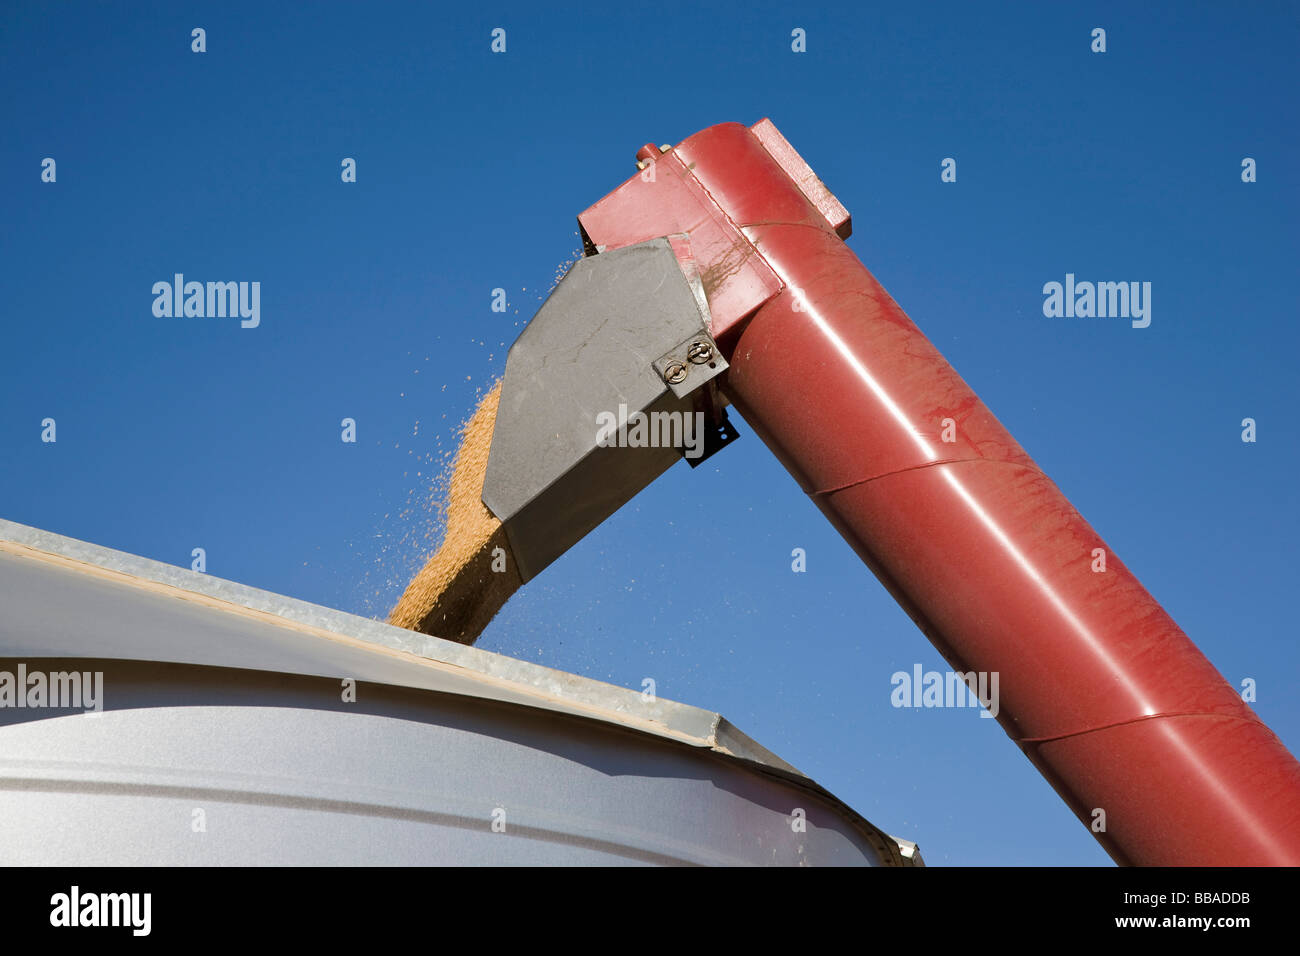 Una mietitrebbia versando il grano in un contenitore Foto Stock